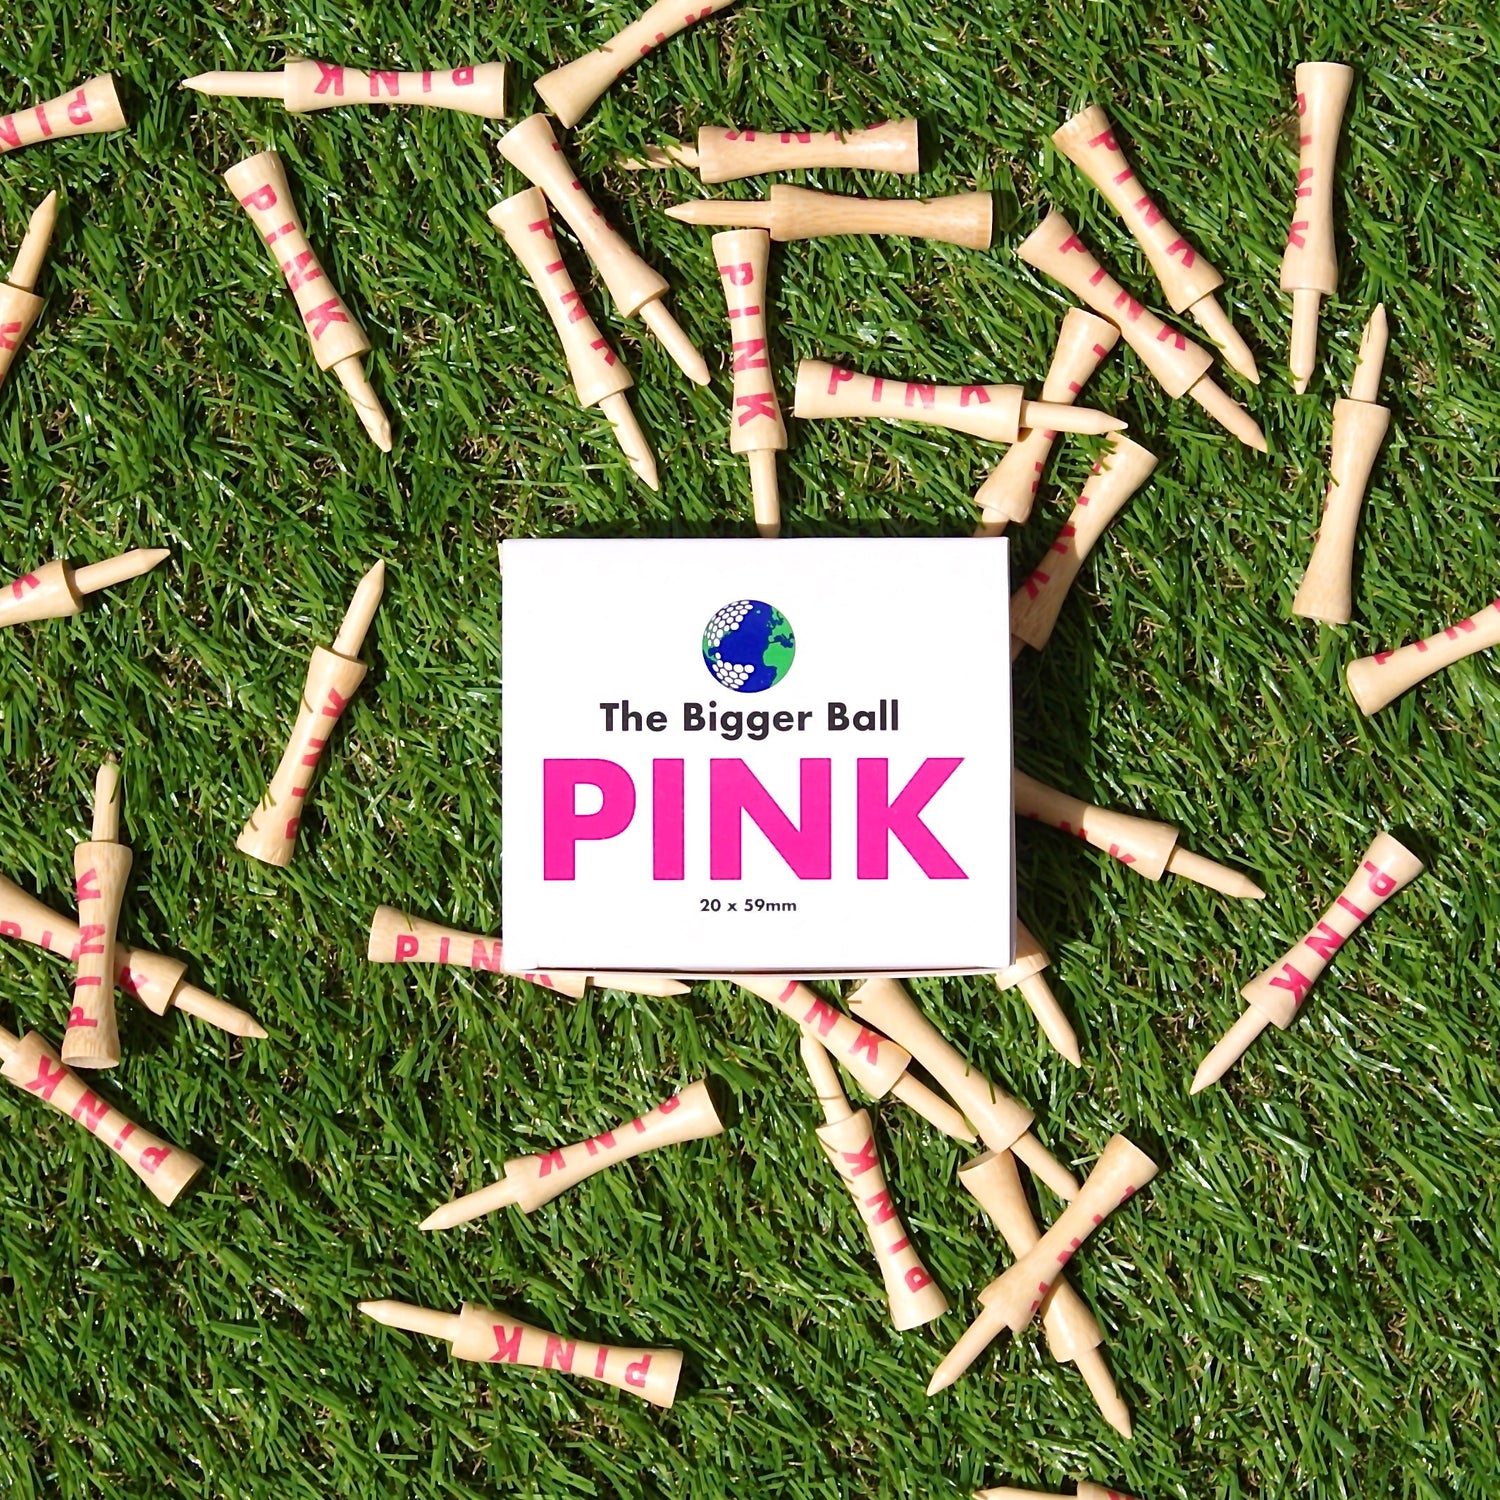 pink golf tees